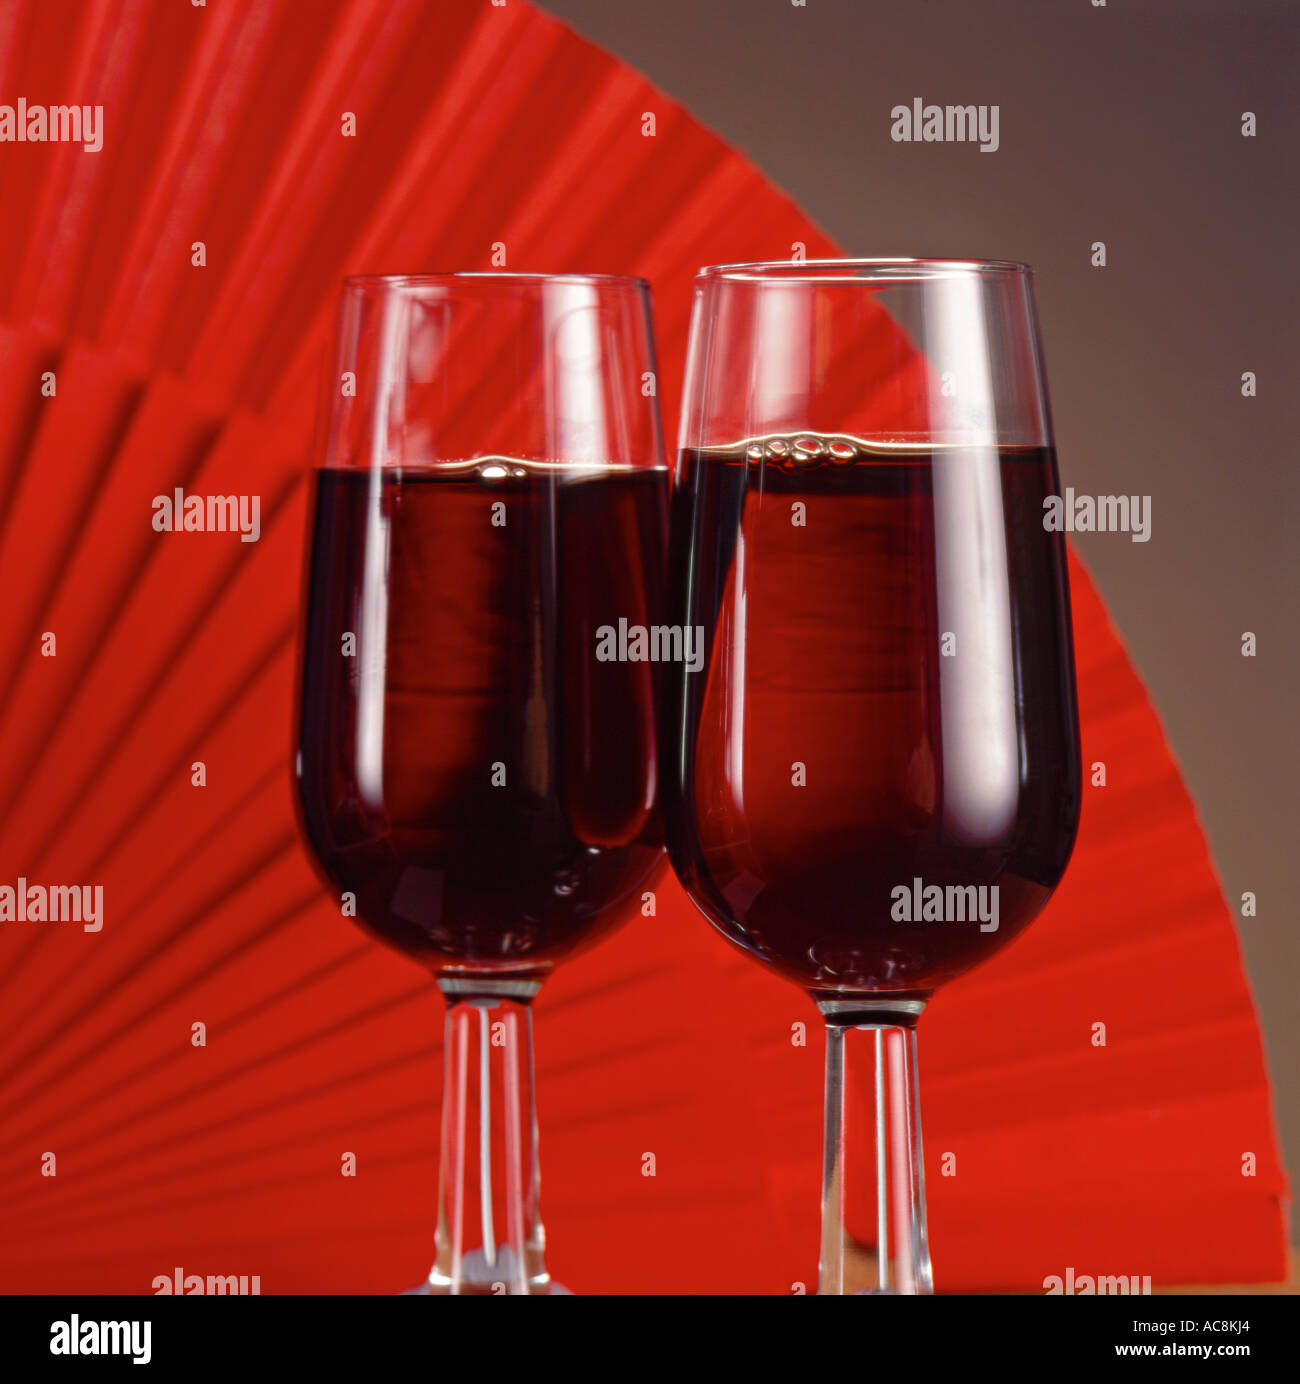 Spanish wine Stock Photo